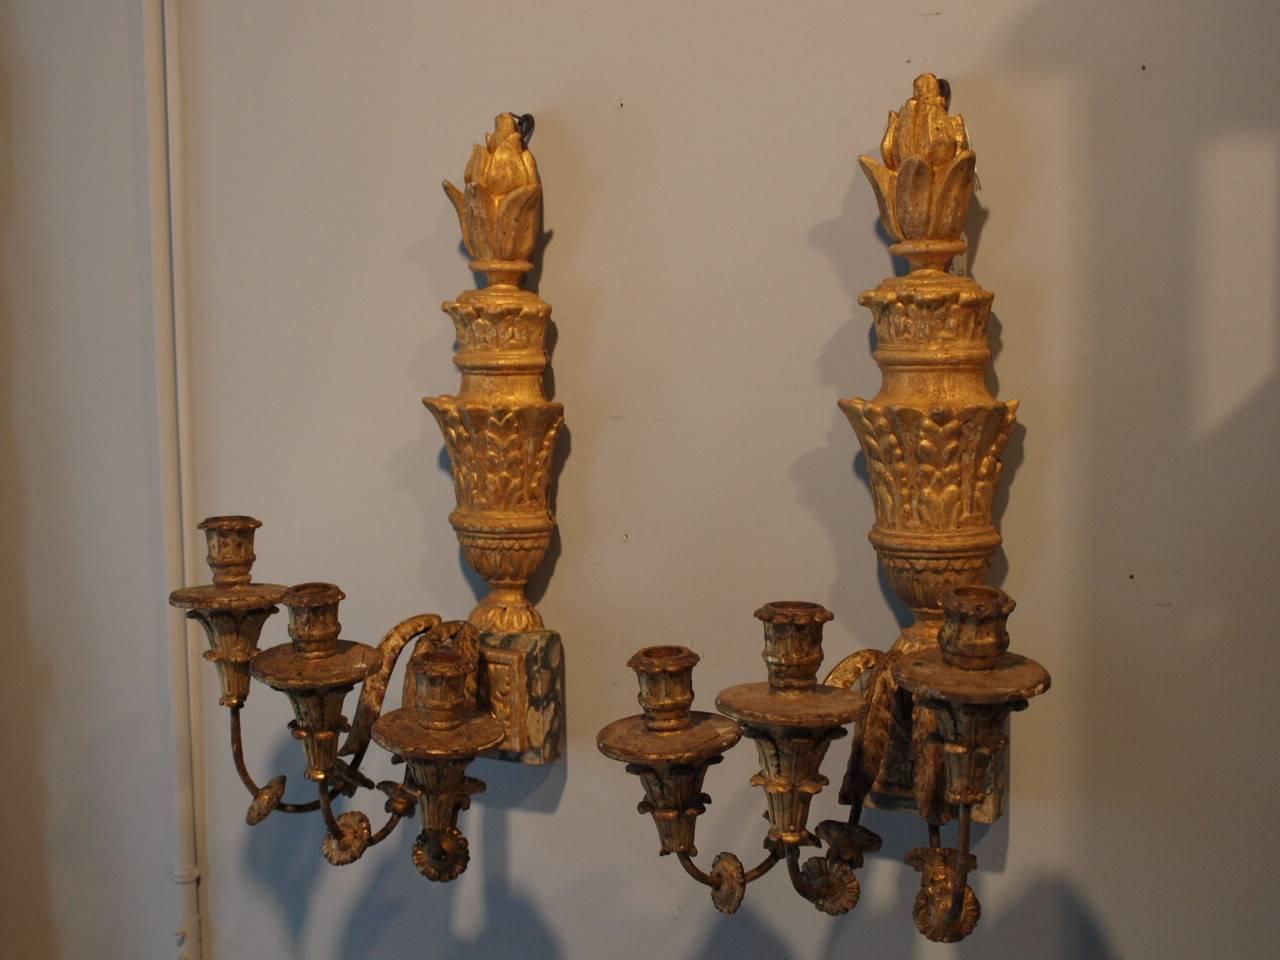 Une paire d'appliques à 3 bras de lumière très remarquable du 18ème siècle en Italie du Nord.  Magnifiquement construit en bois polychromé et doré avec des bras en fer effilés.  Détails en faux marbre.